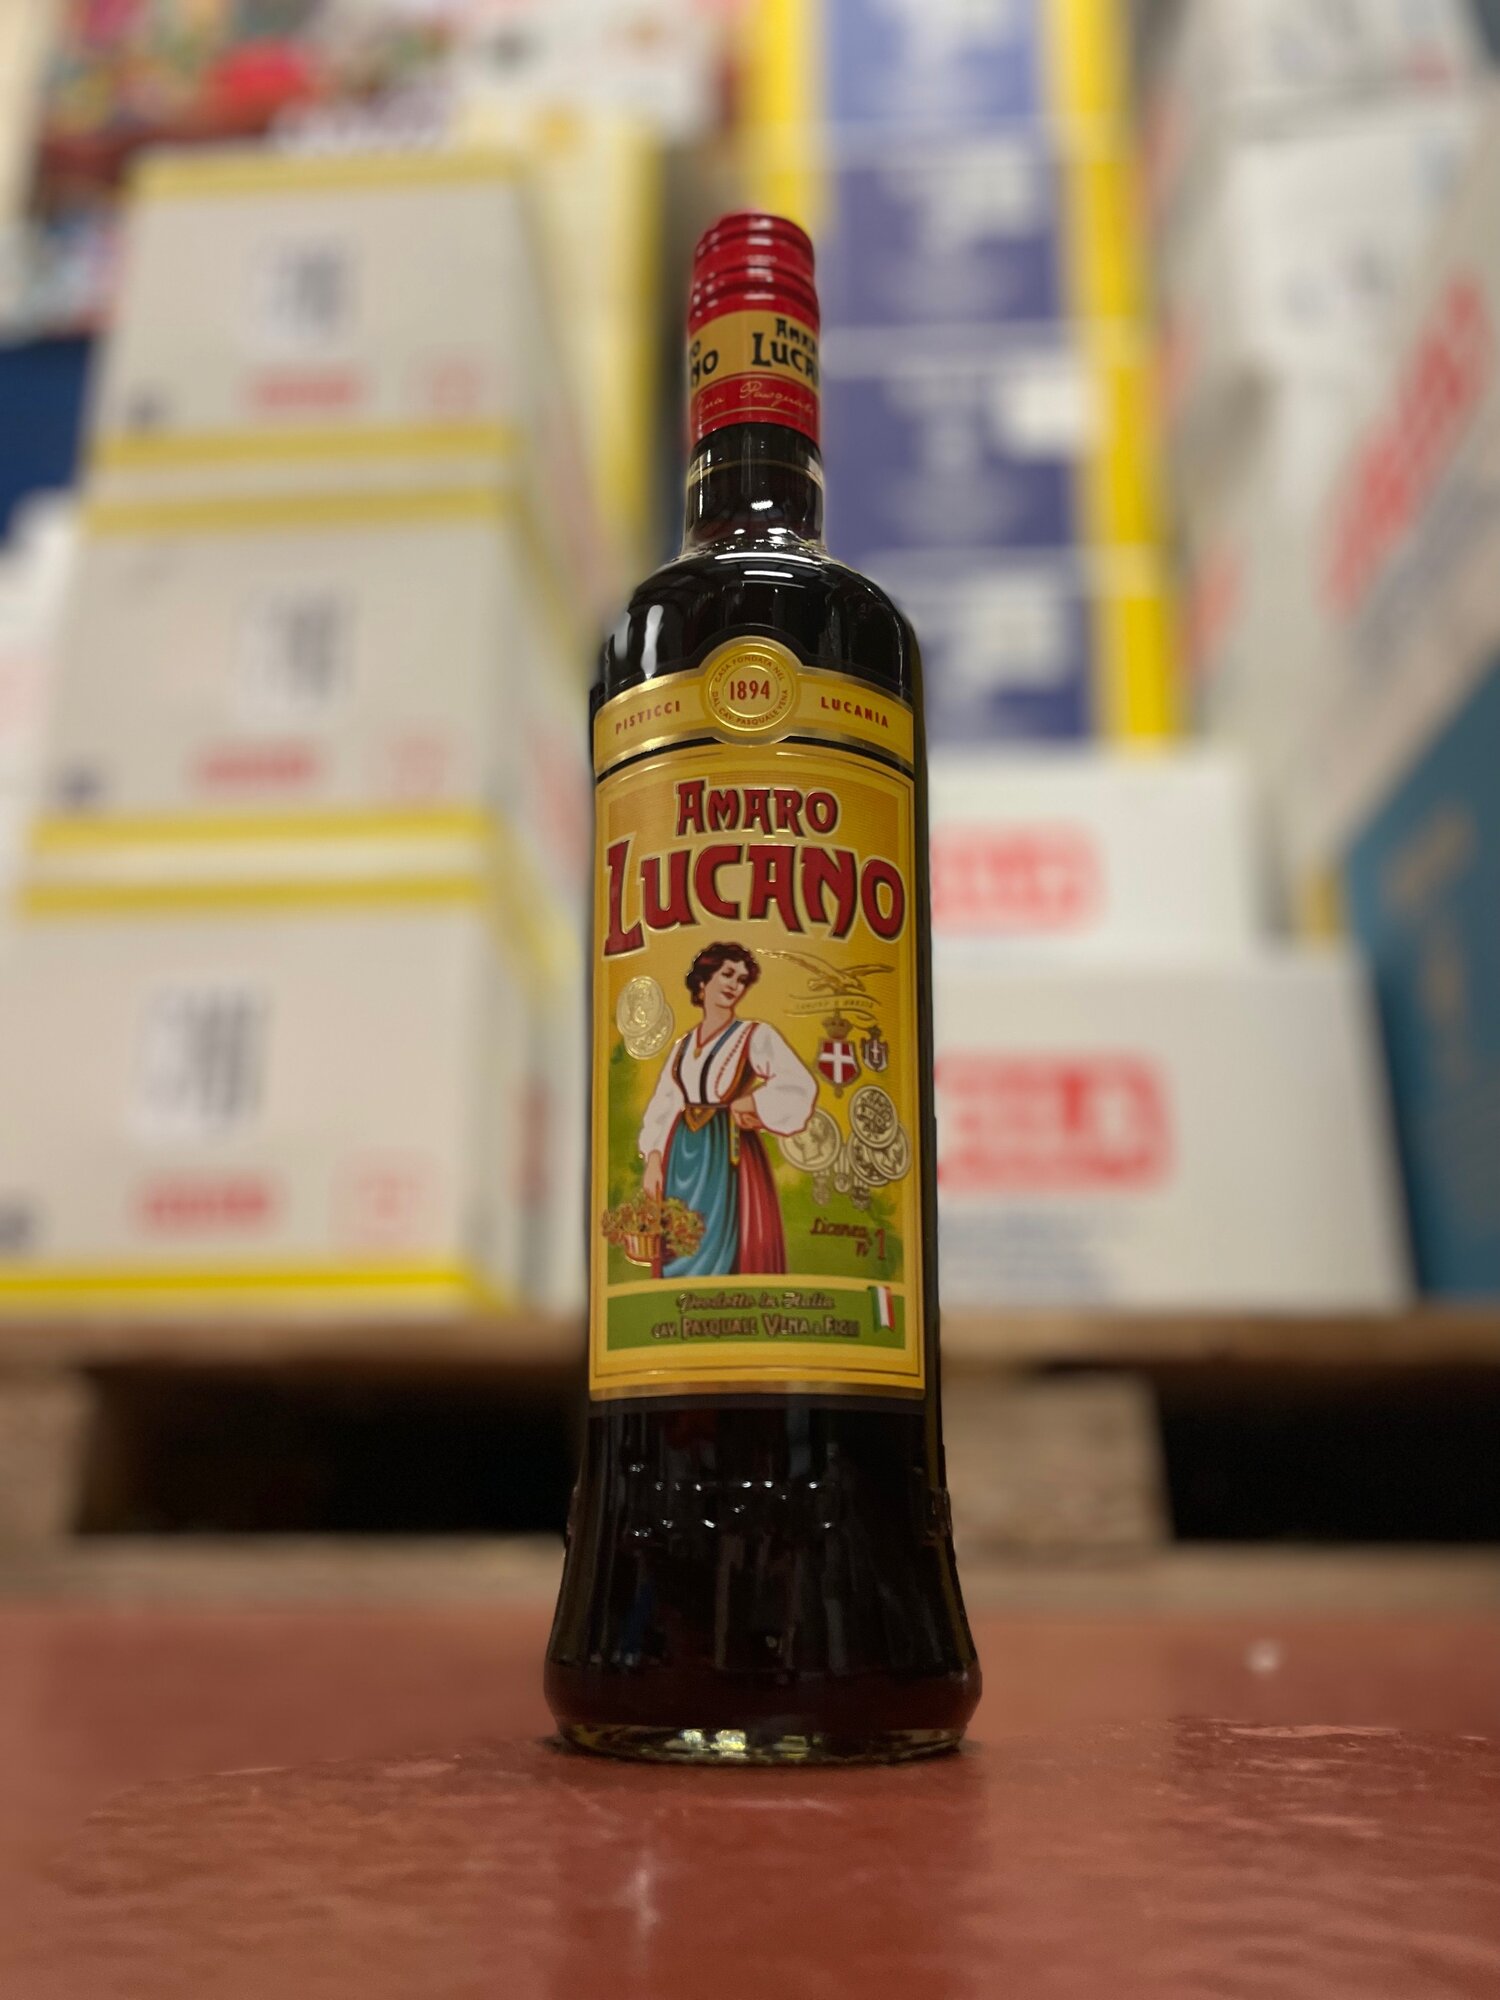 Amaro Lucano, 1895 Liquori Frescura: Amaro Lucano